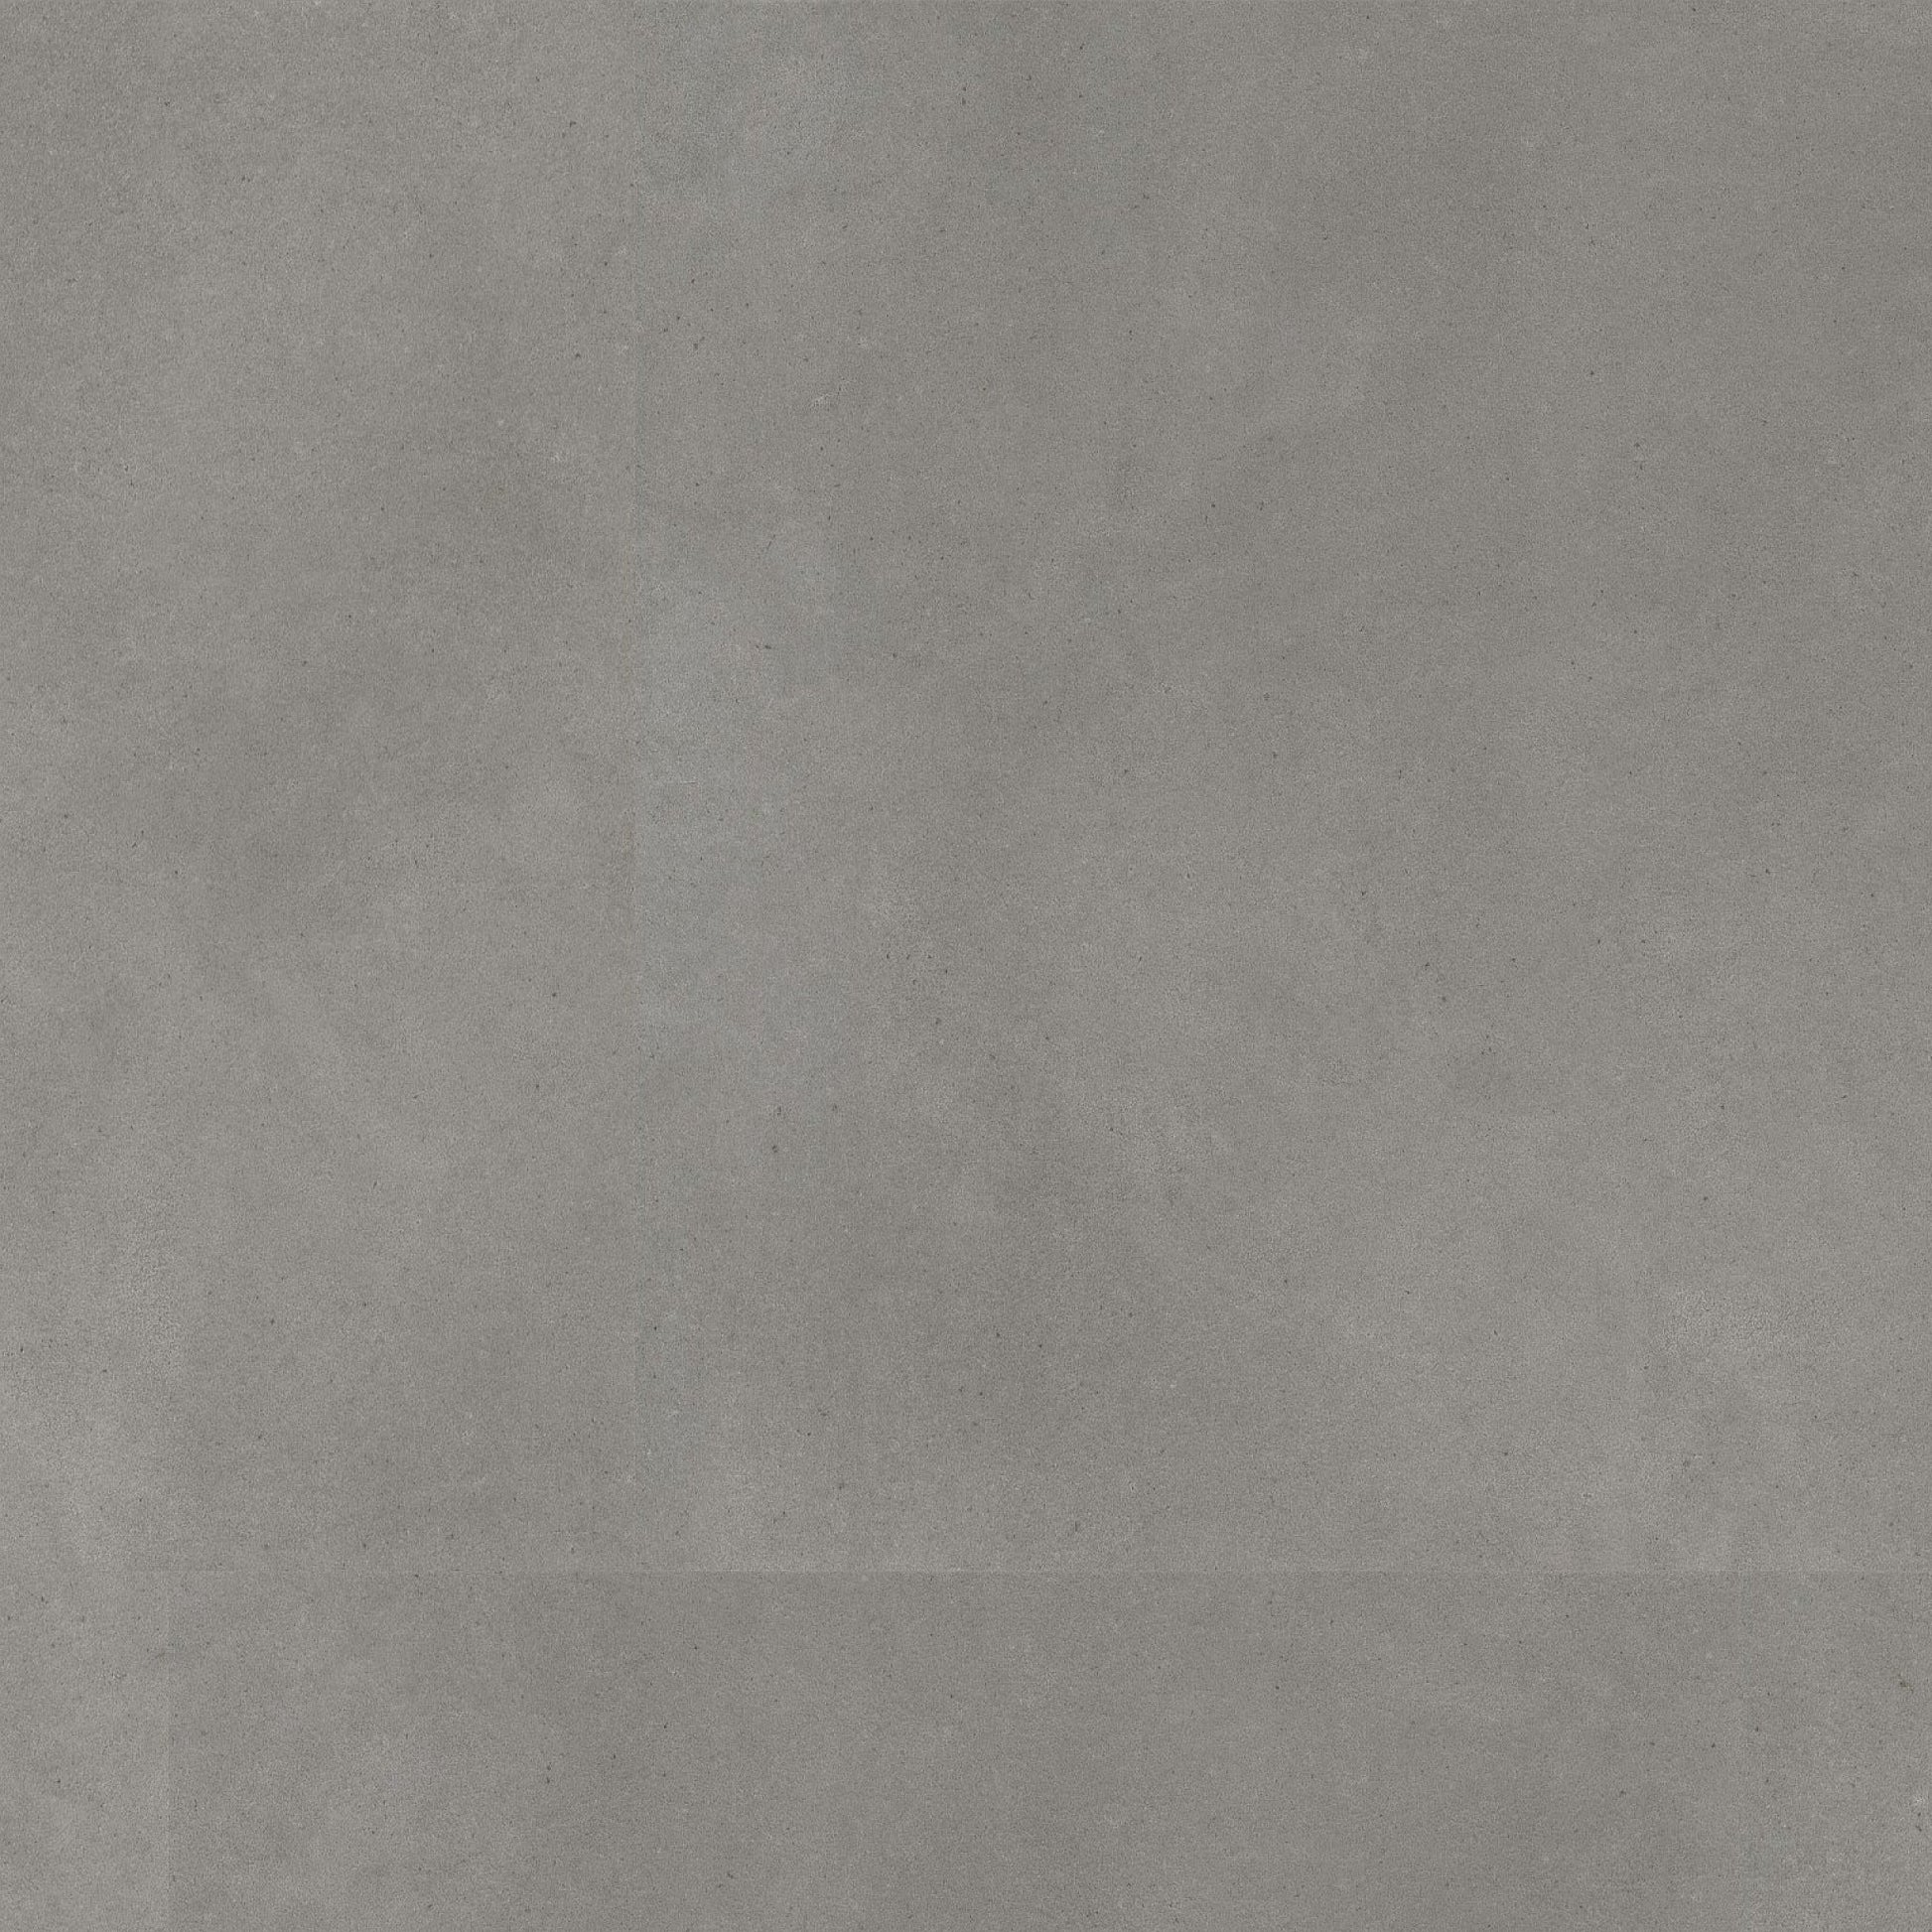 Floorlife Peckham Light Grey 1880 Tegel Dryback PVC - 61x61 cm - Solza.nl